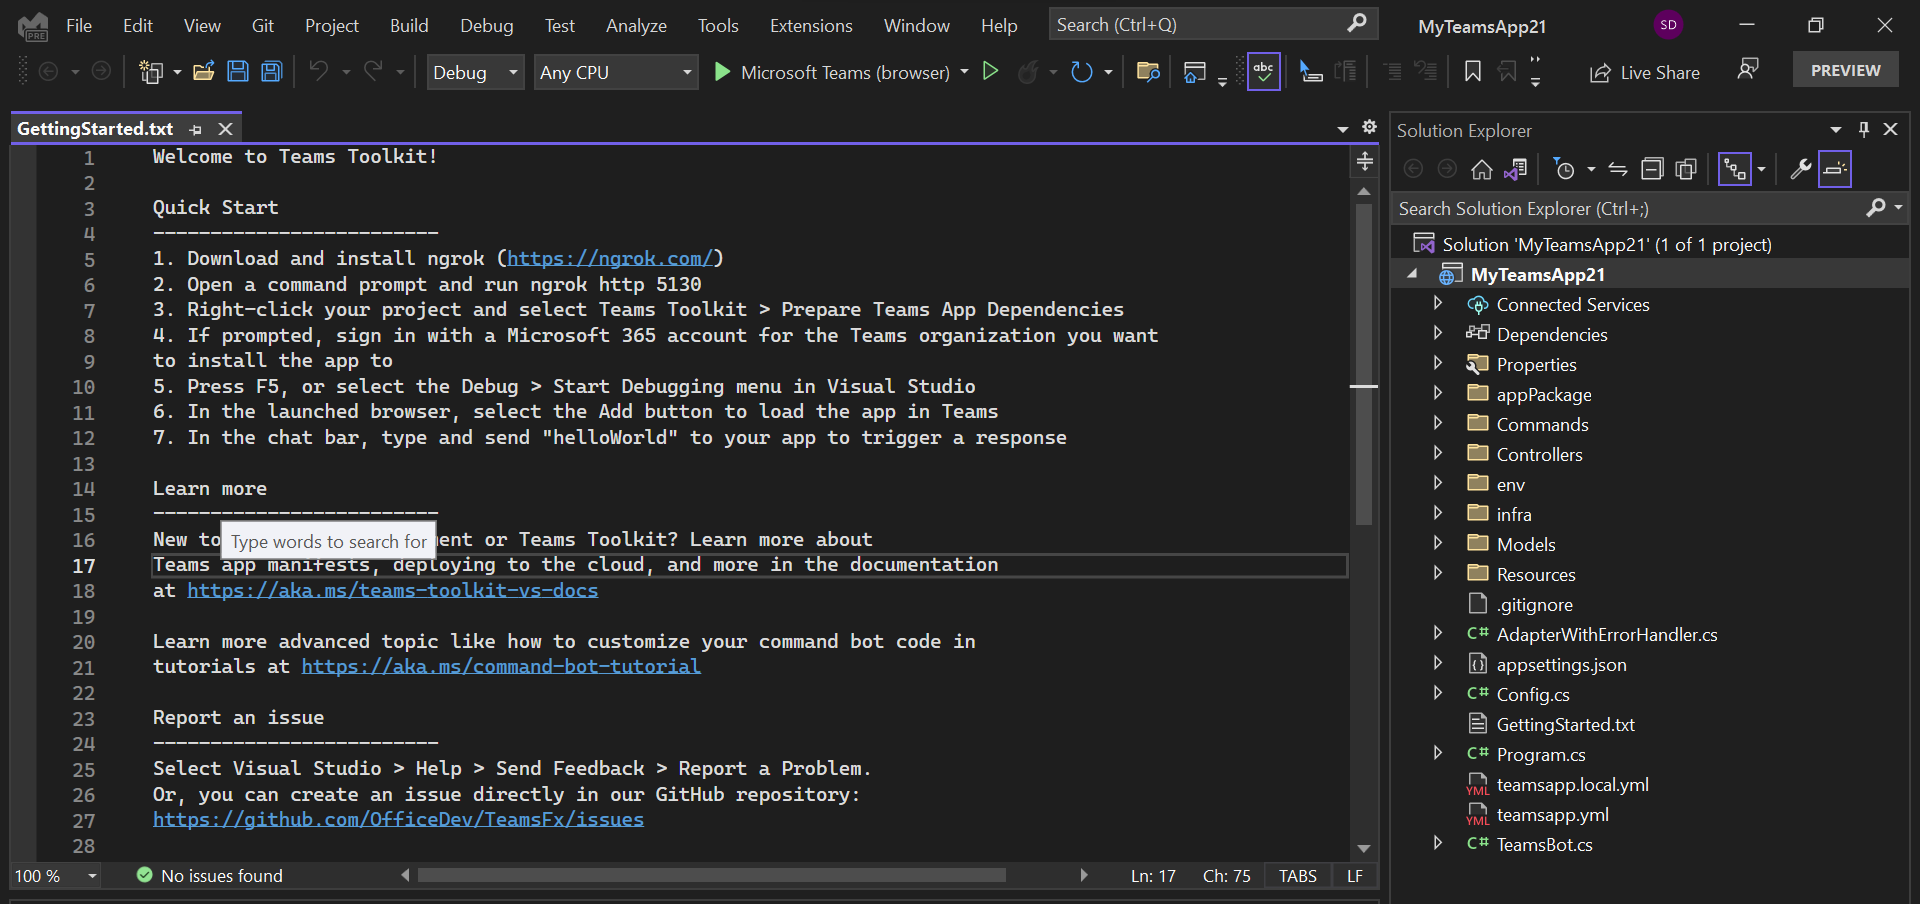 屏幕截图显示了 Visual Studio 中项目的基架。 